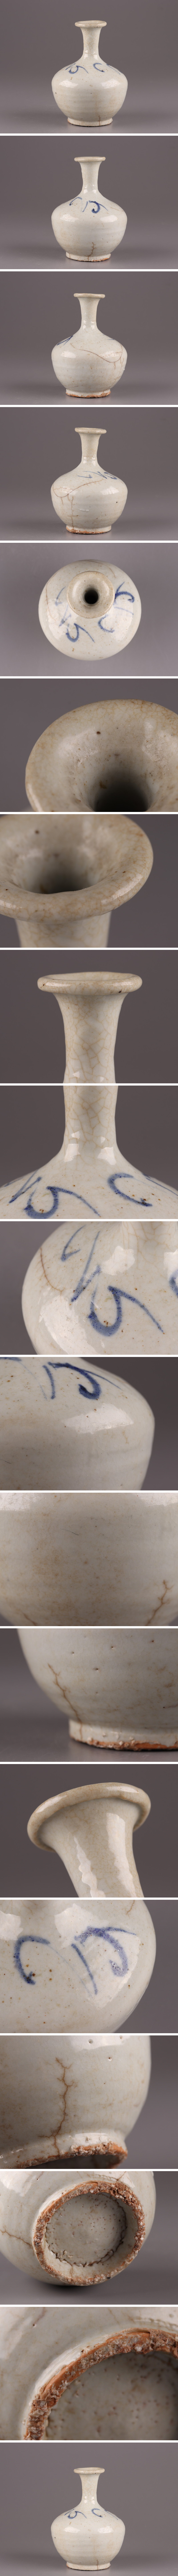 【在庫正規品】古美術 朝鮮古陶磁器 李朝 白磁 染付 花瓶 時代物 極上品 初だし品 4148 李朝